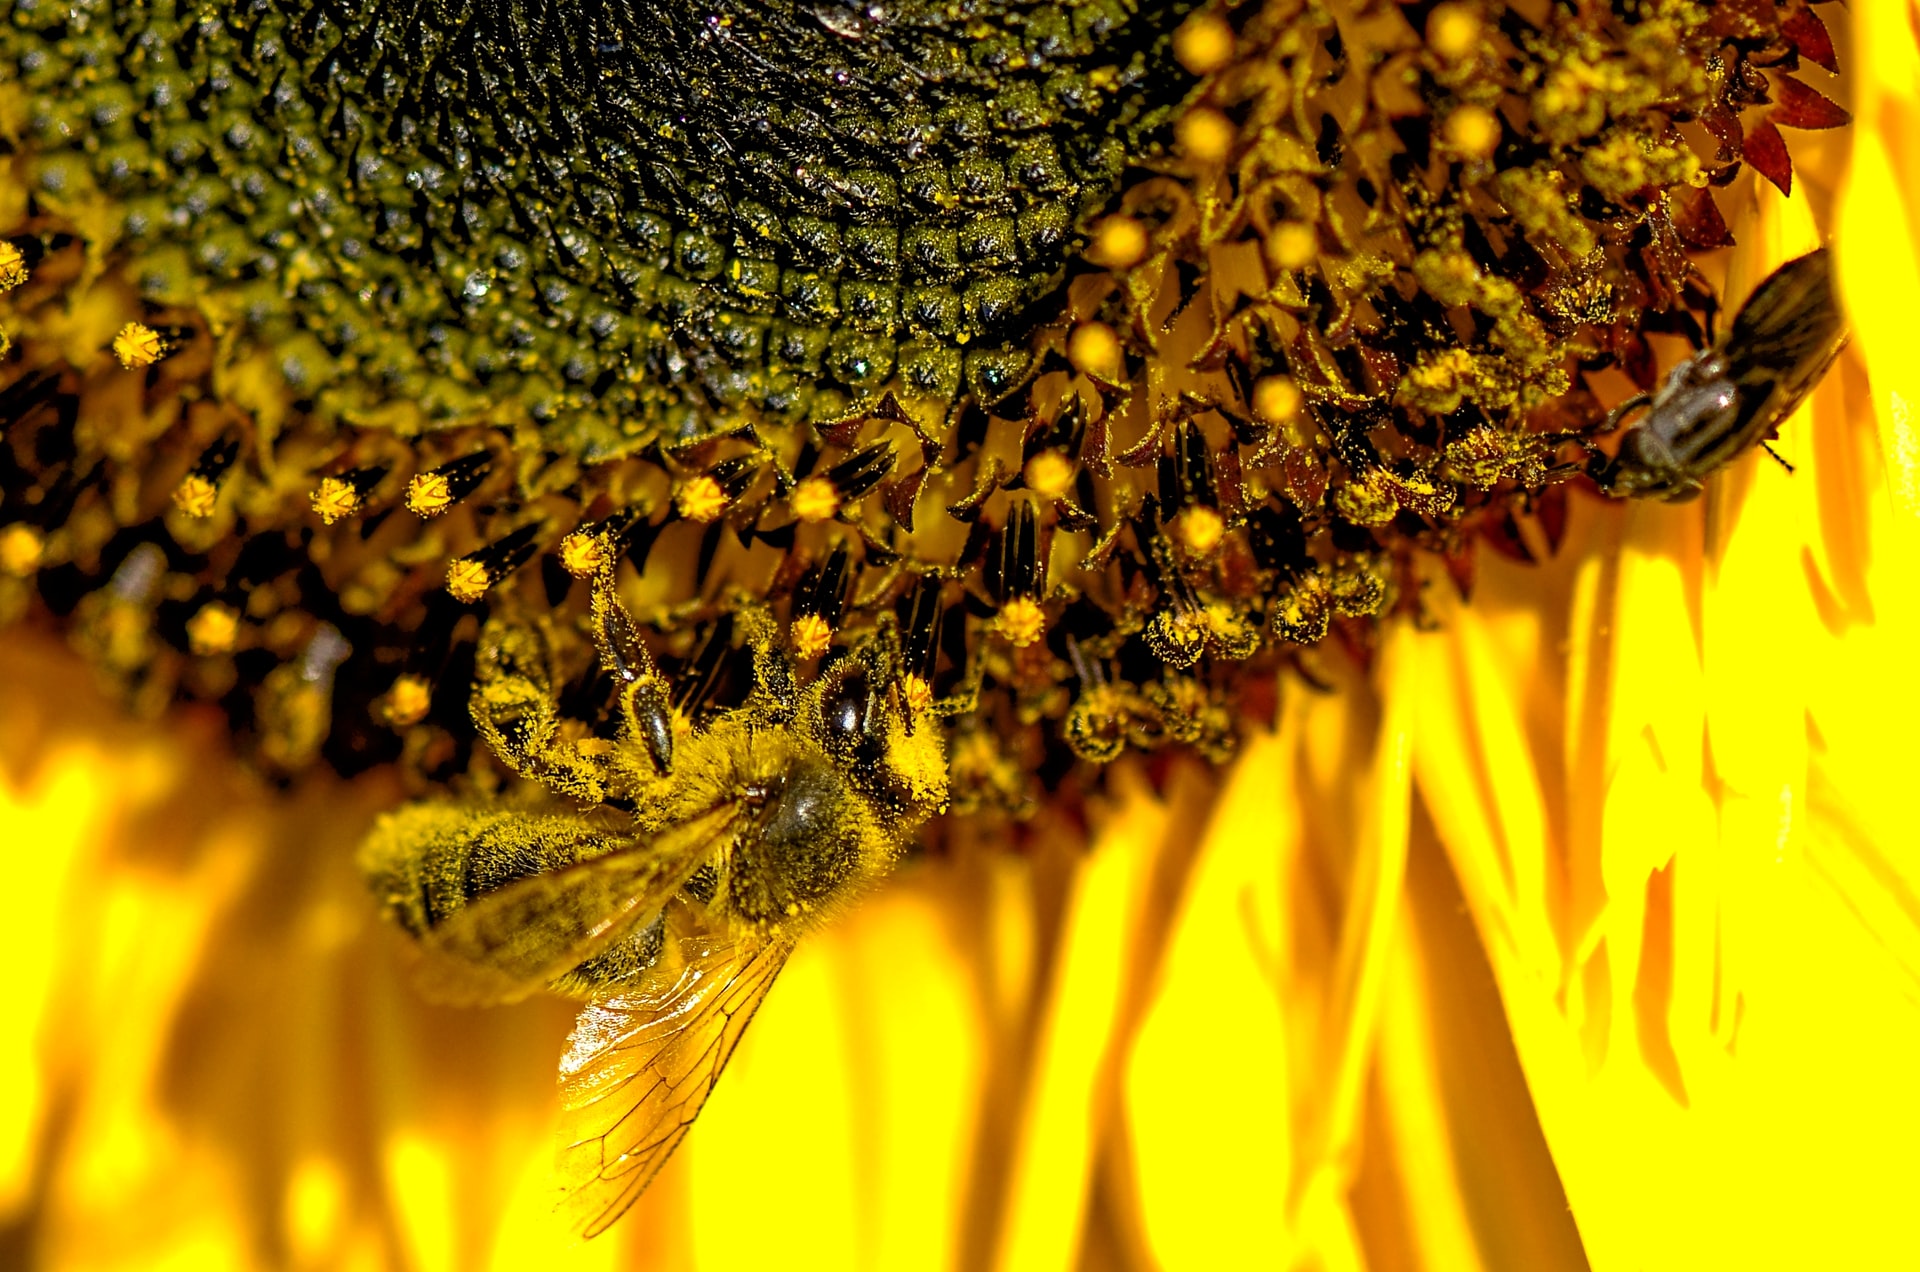 Pyłek kwiatowy — jak działa i jak stosować?